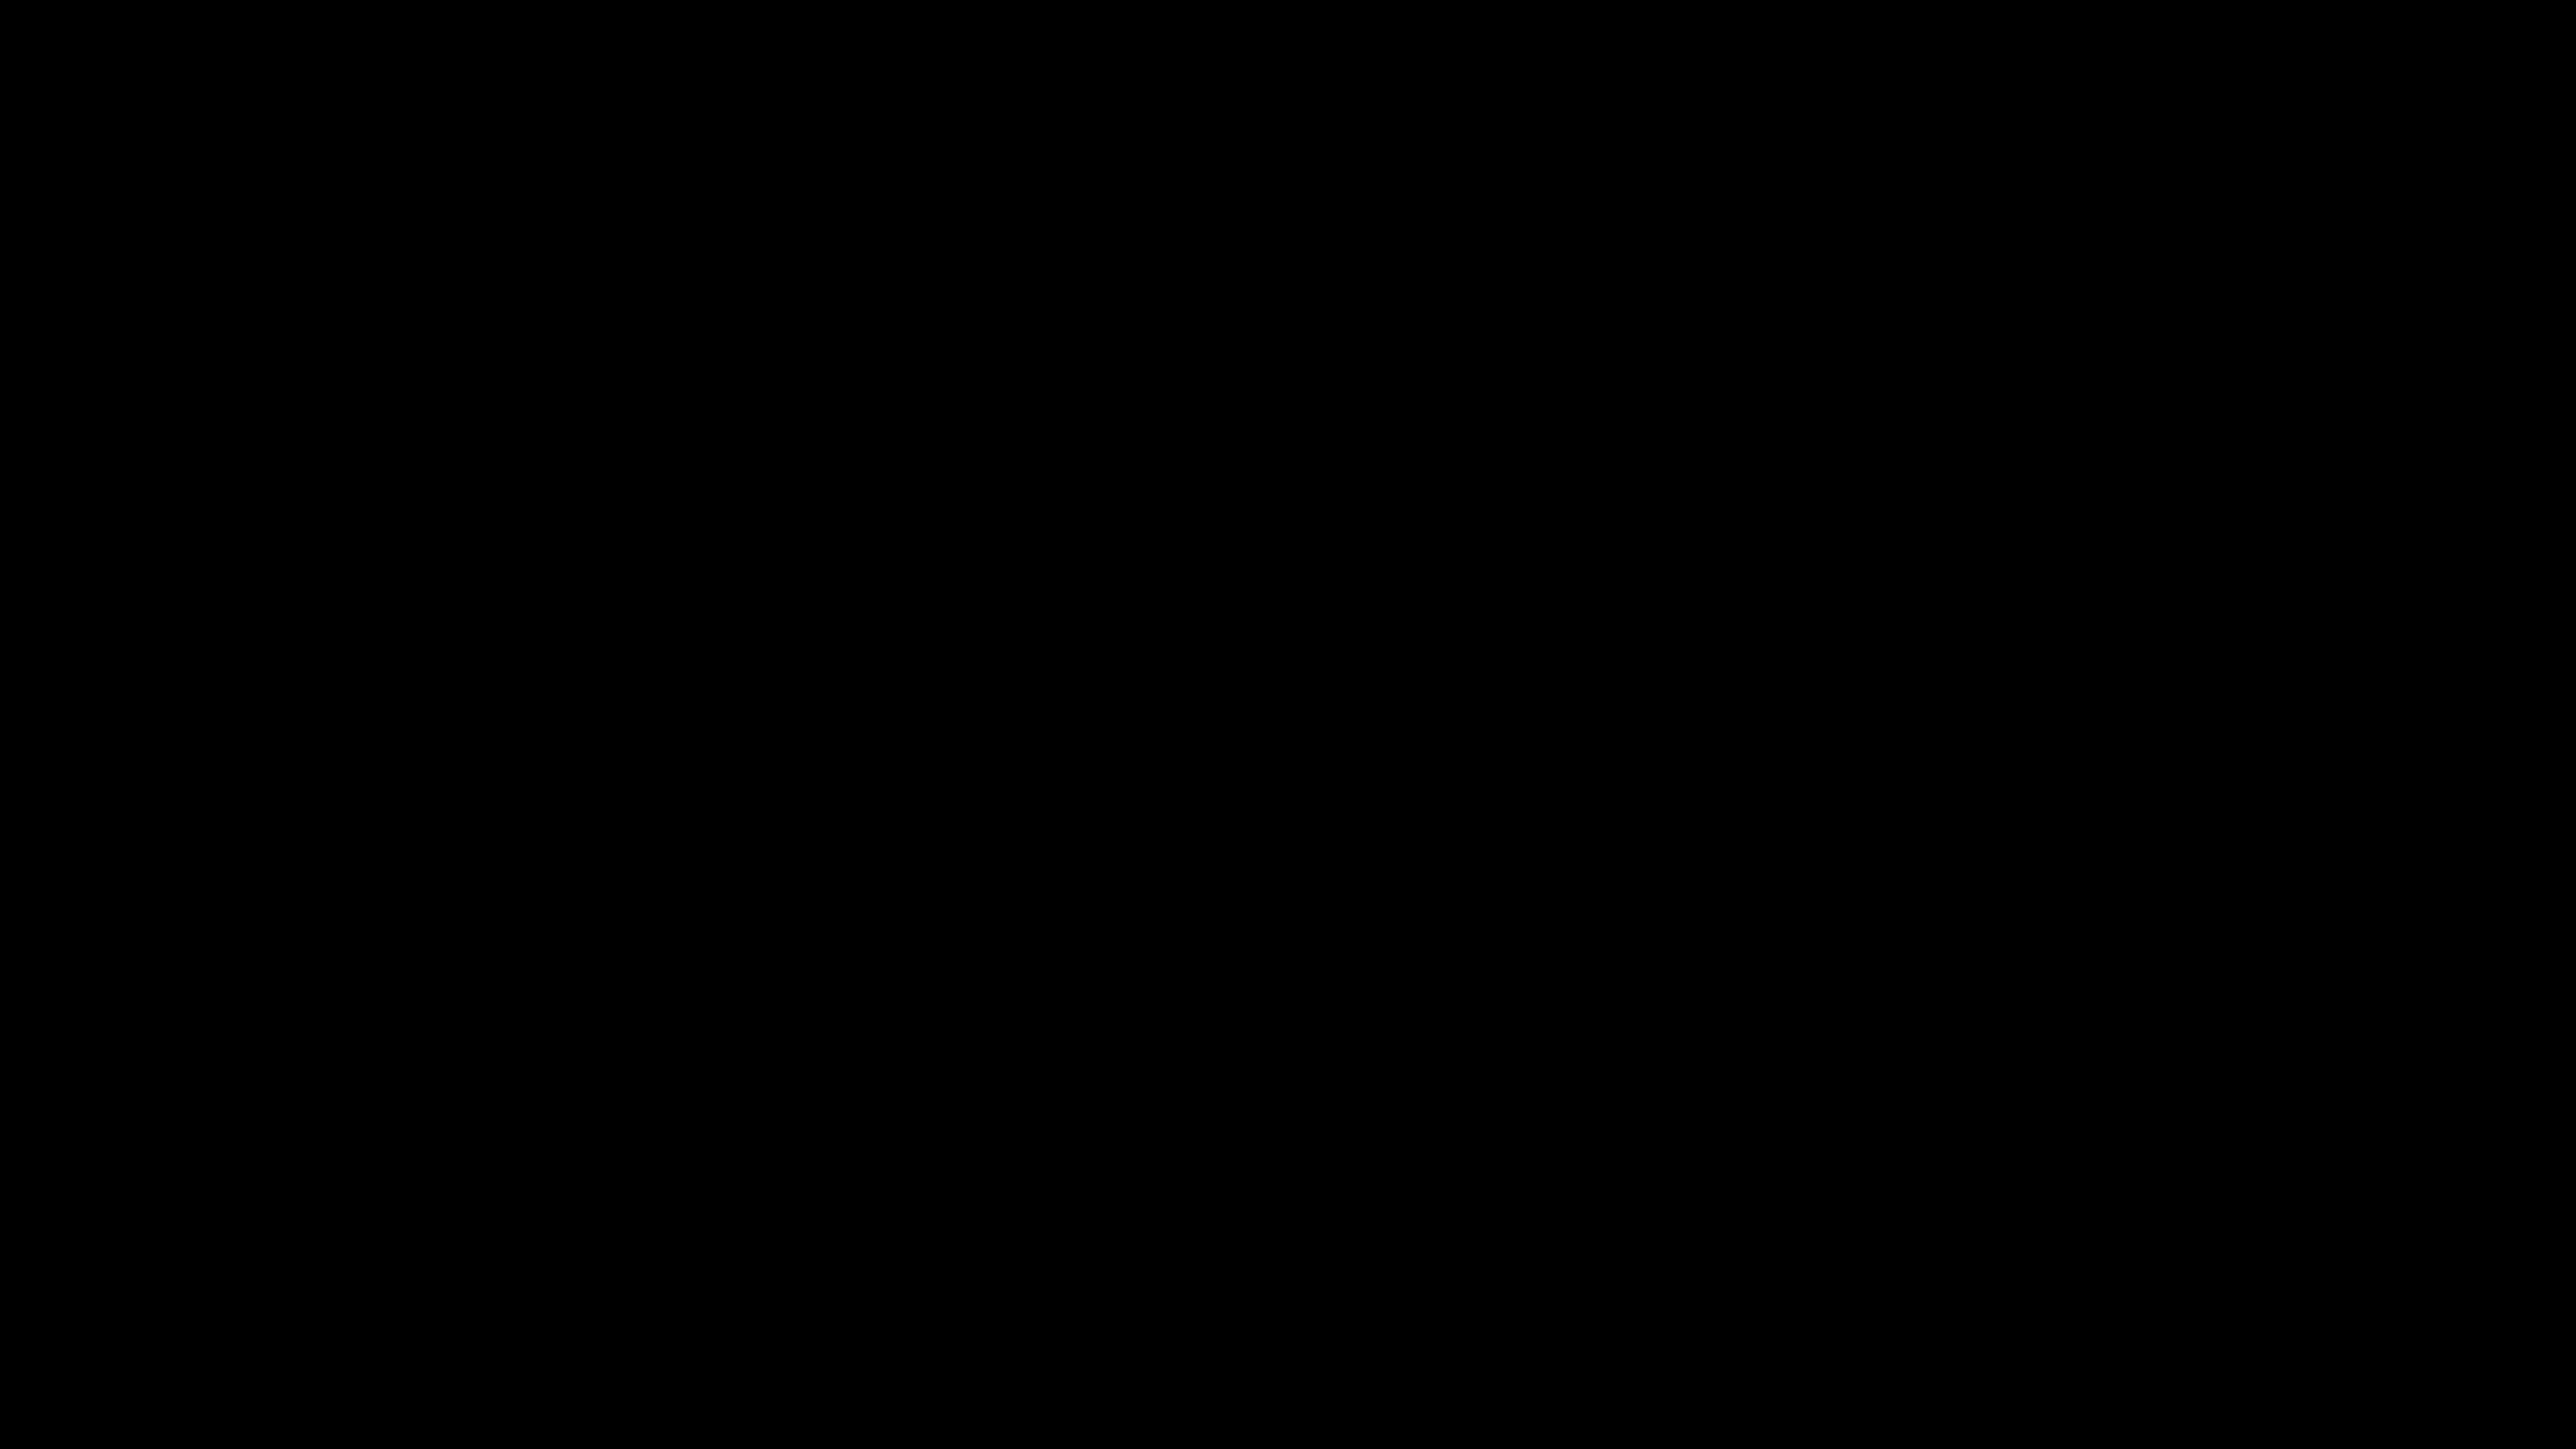 Html Schwarzer Hintergrund - drarchanarathi WALLPAPER